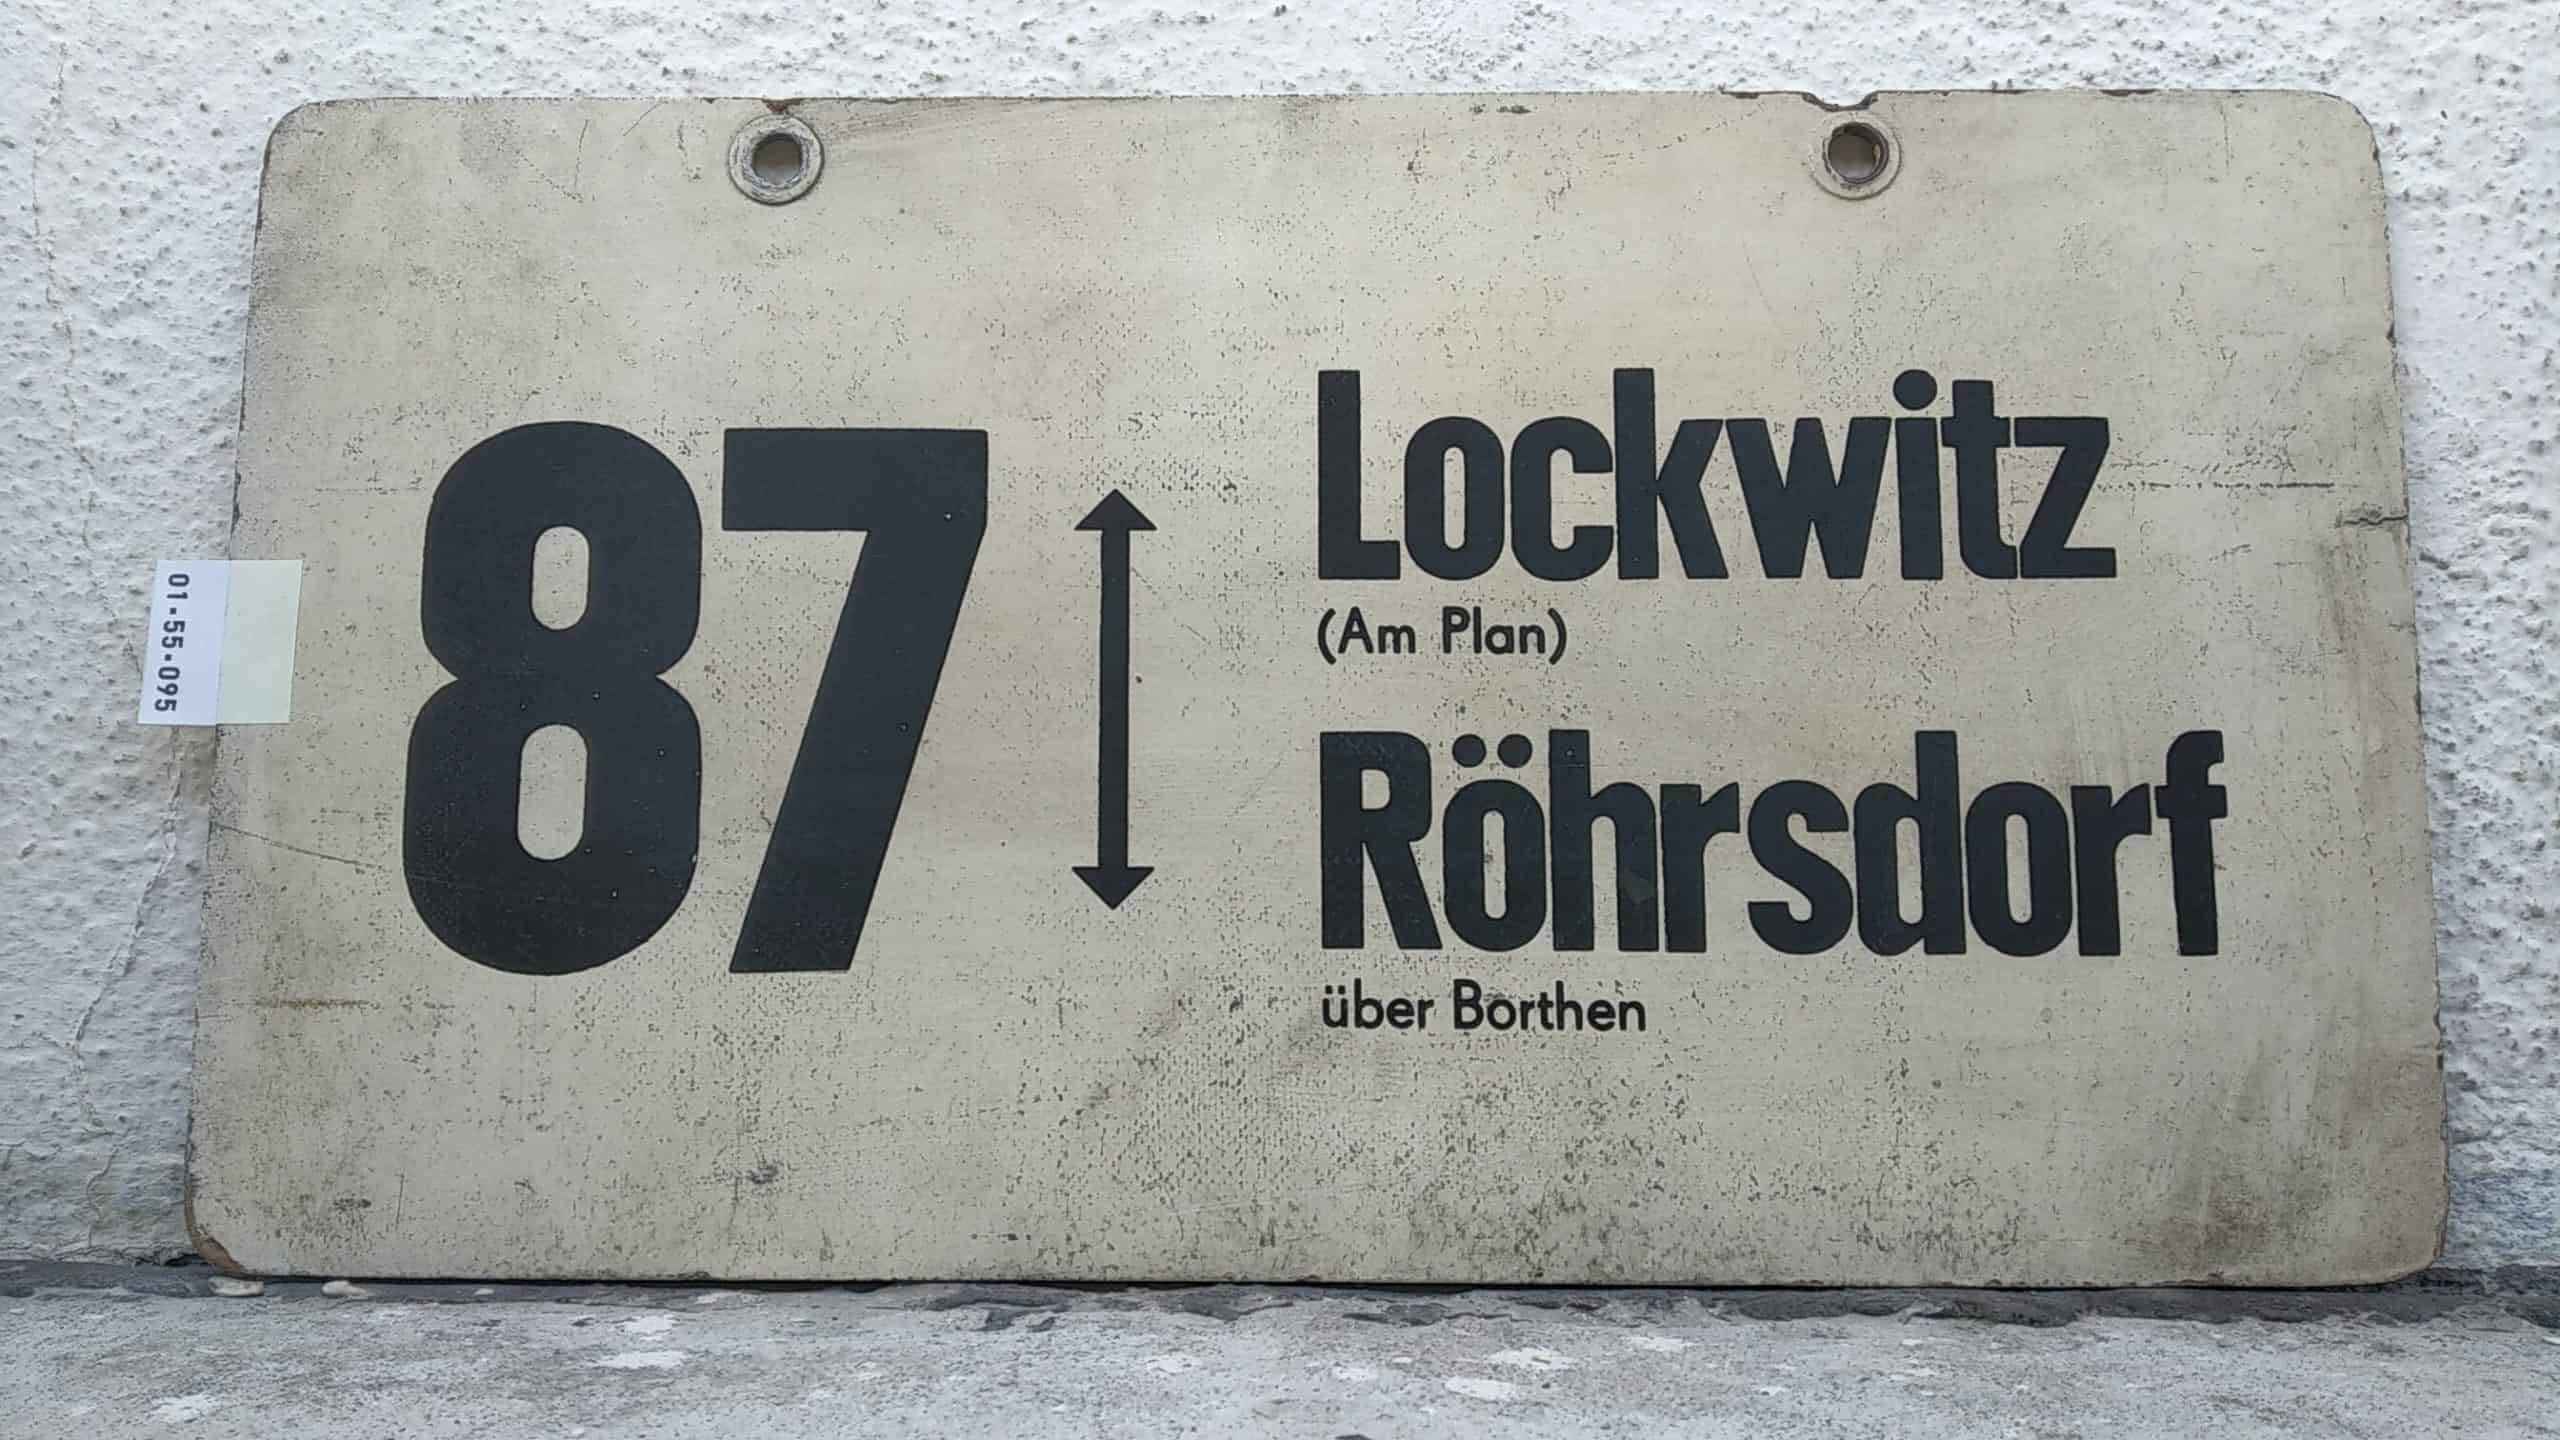 Ein seltenes Bus-Linienschild aus Dresden der Linie 87 von Lockwitz (Am Plan) nach Röhrsdorf